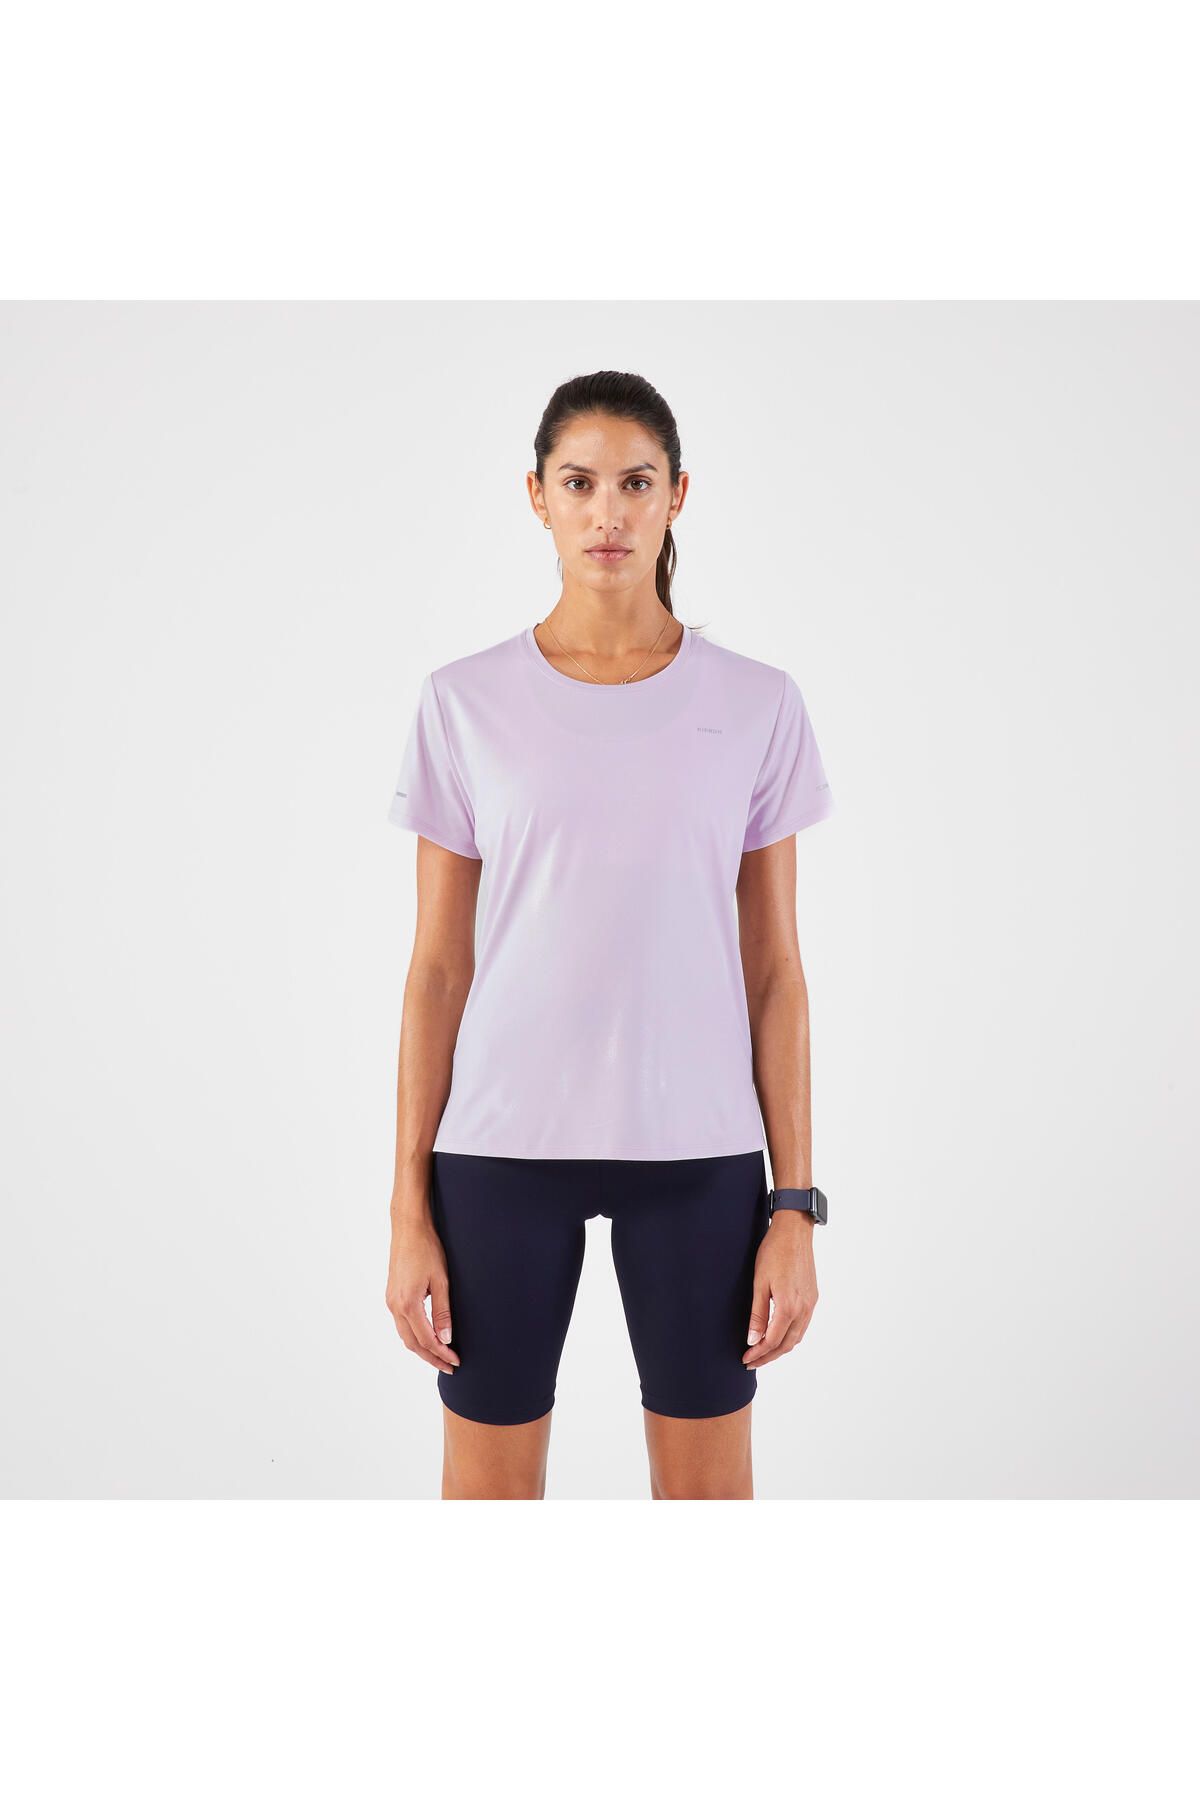 Decathlon Kadın Koşu Tişörtü - Mor - Kiprun Run 500 Dry